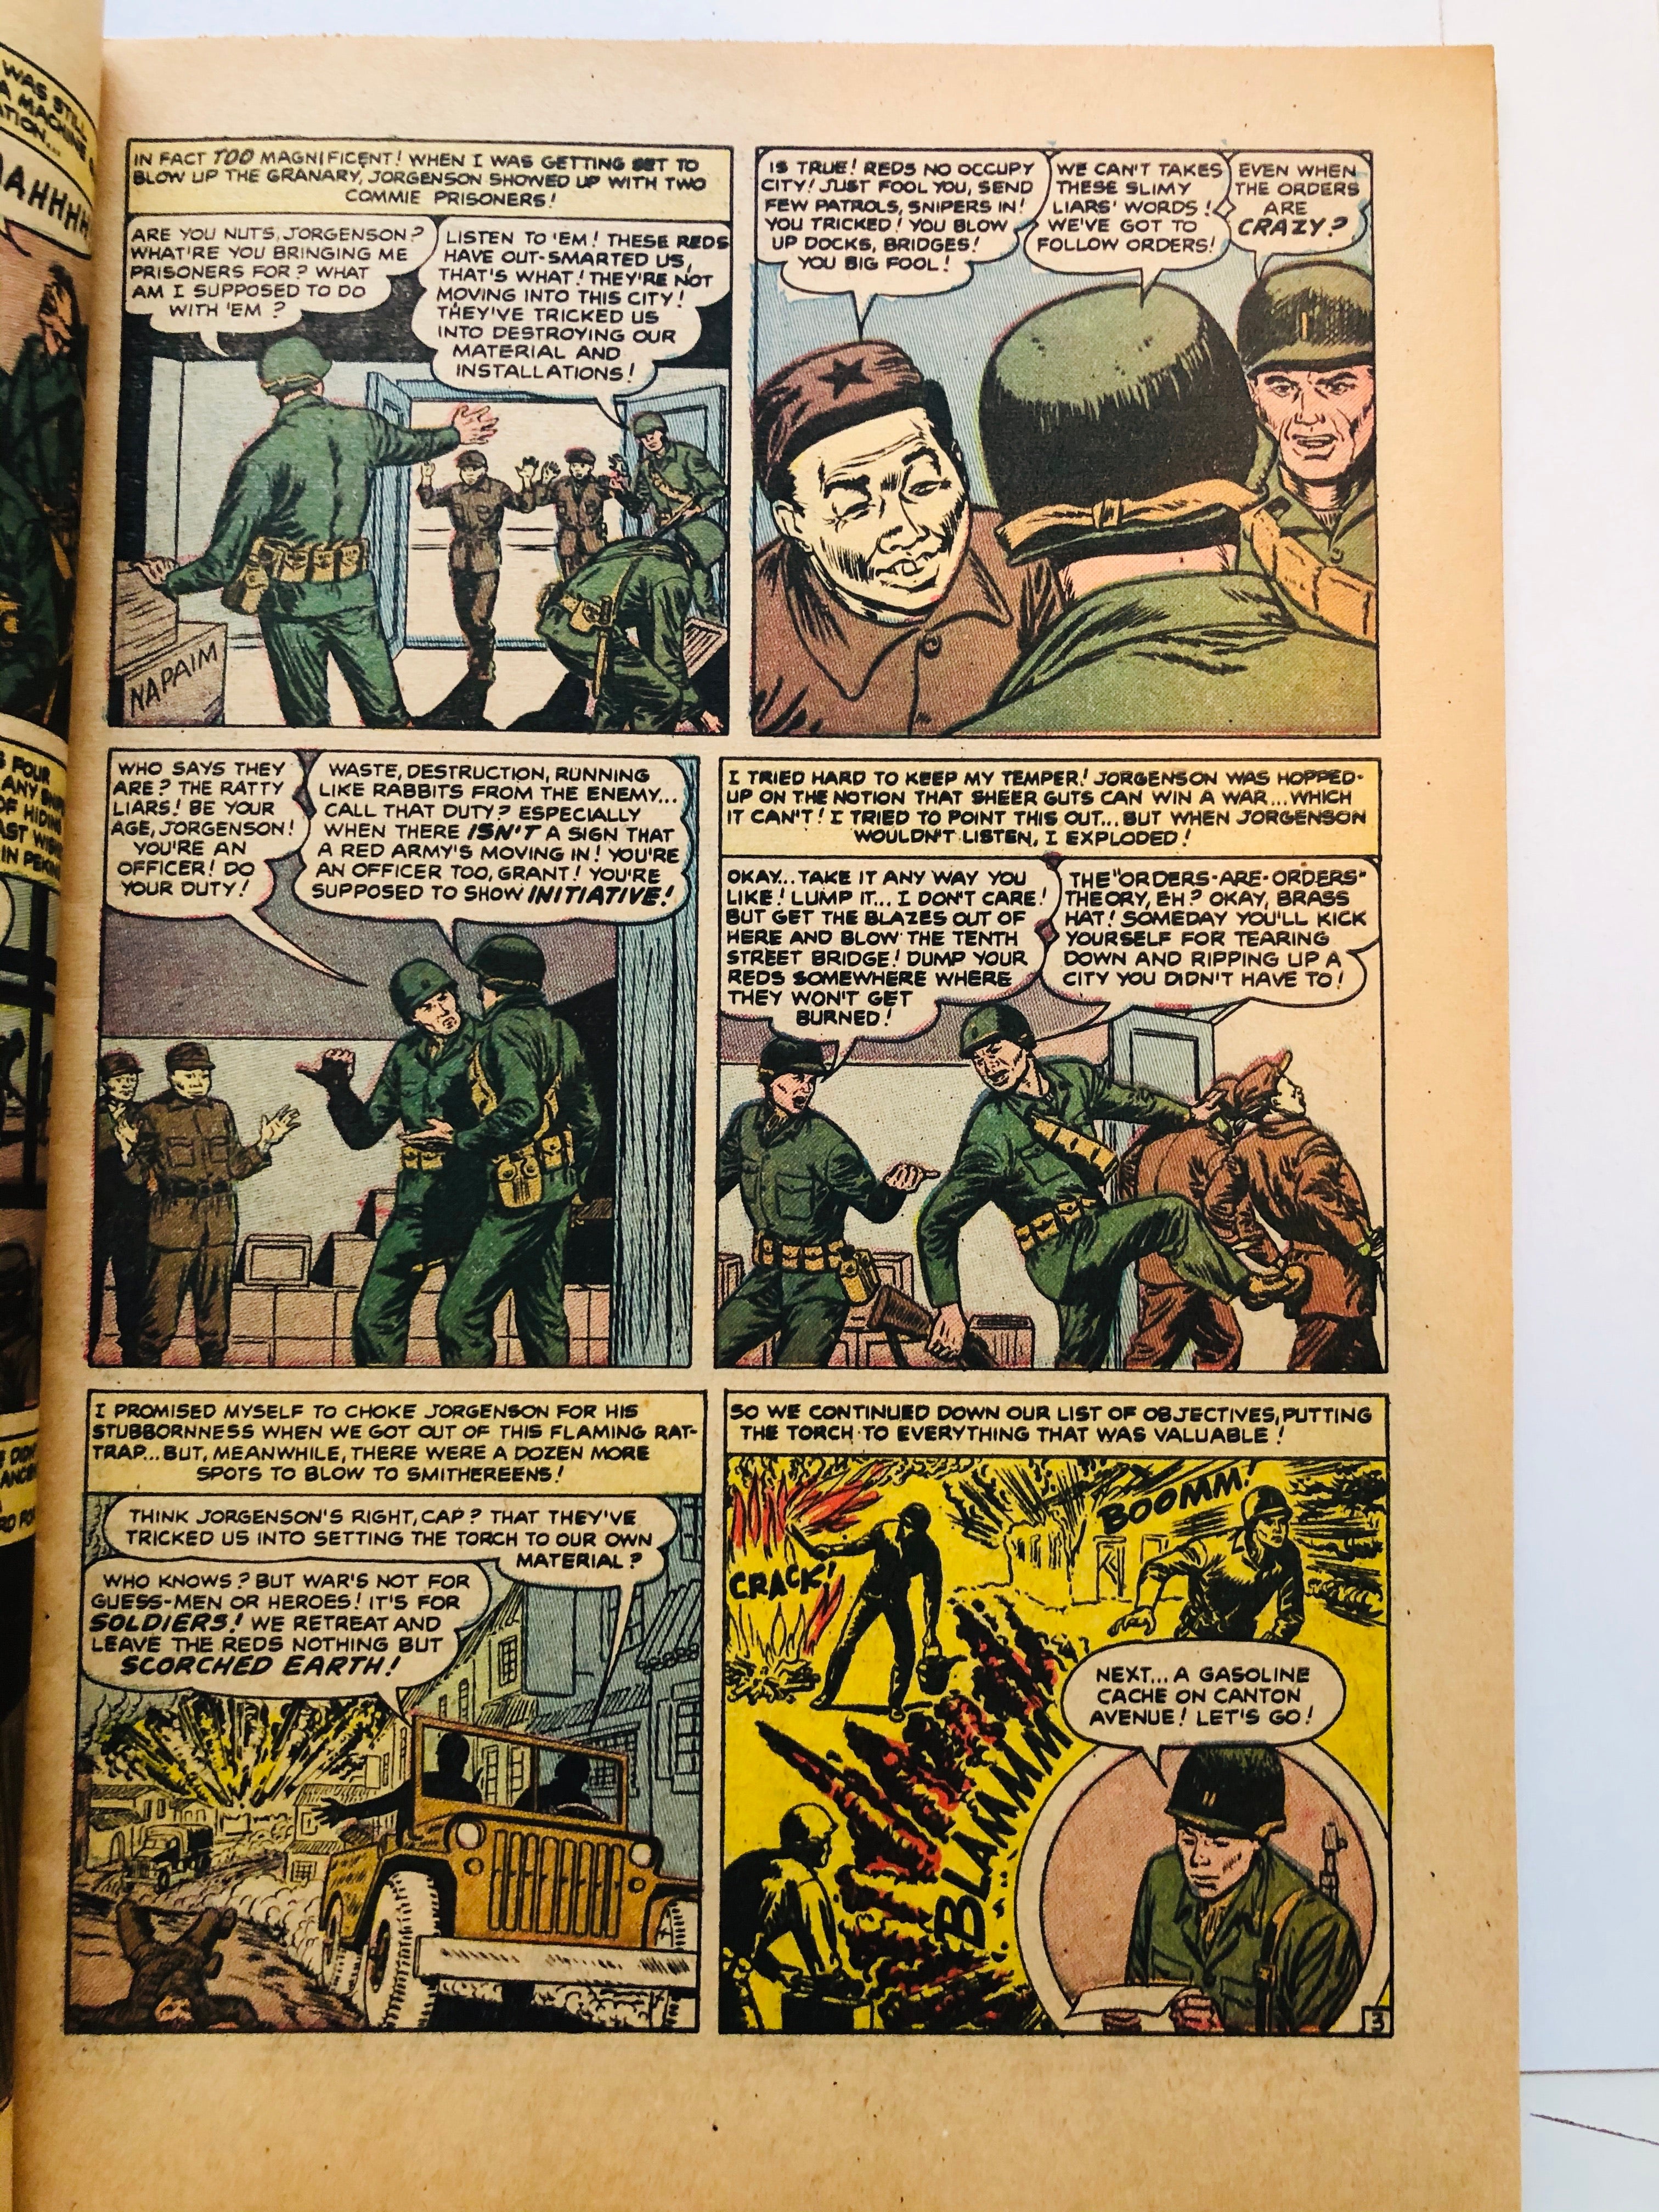 Spy Cases vintage War comic book 1952